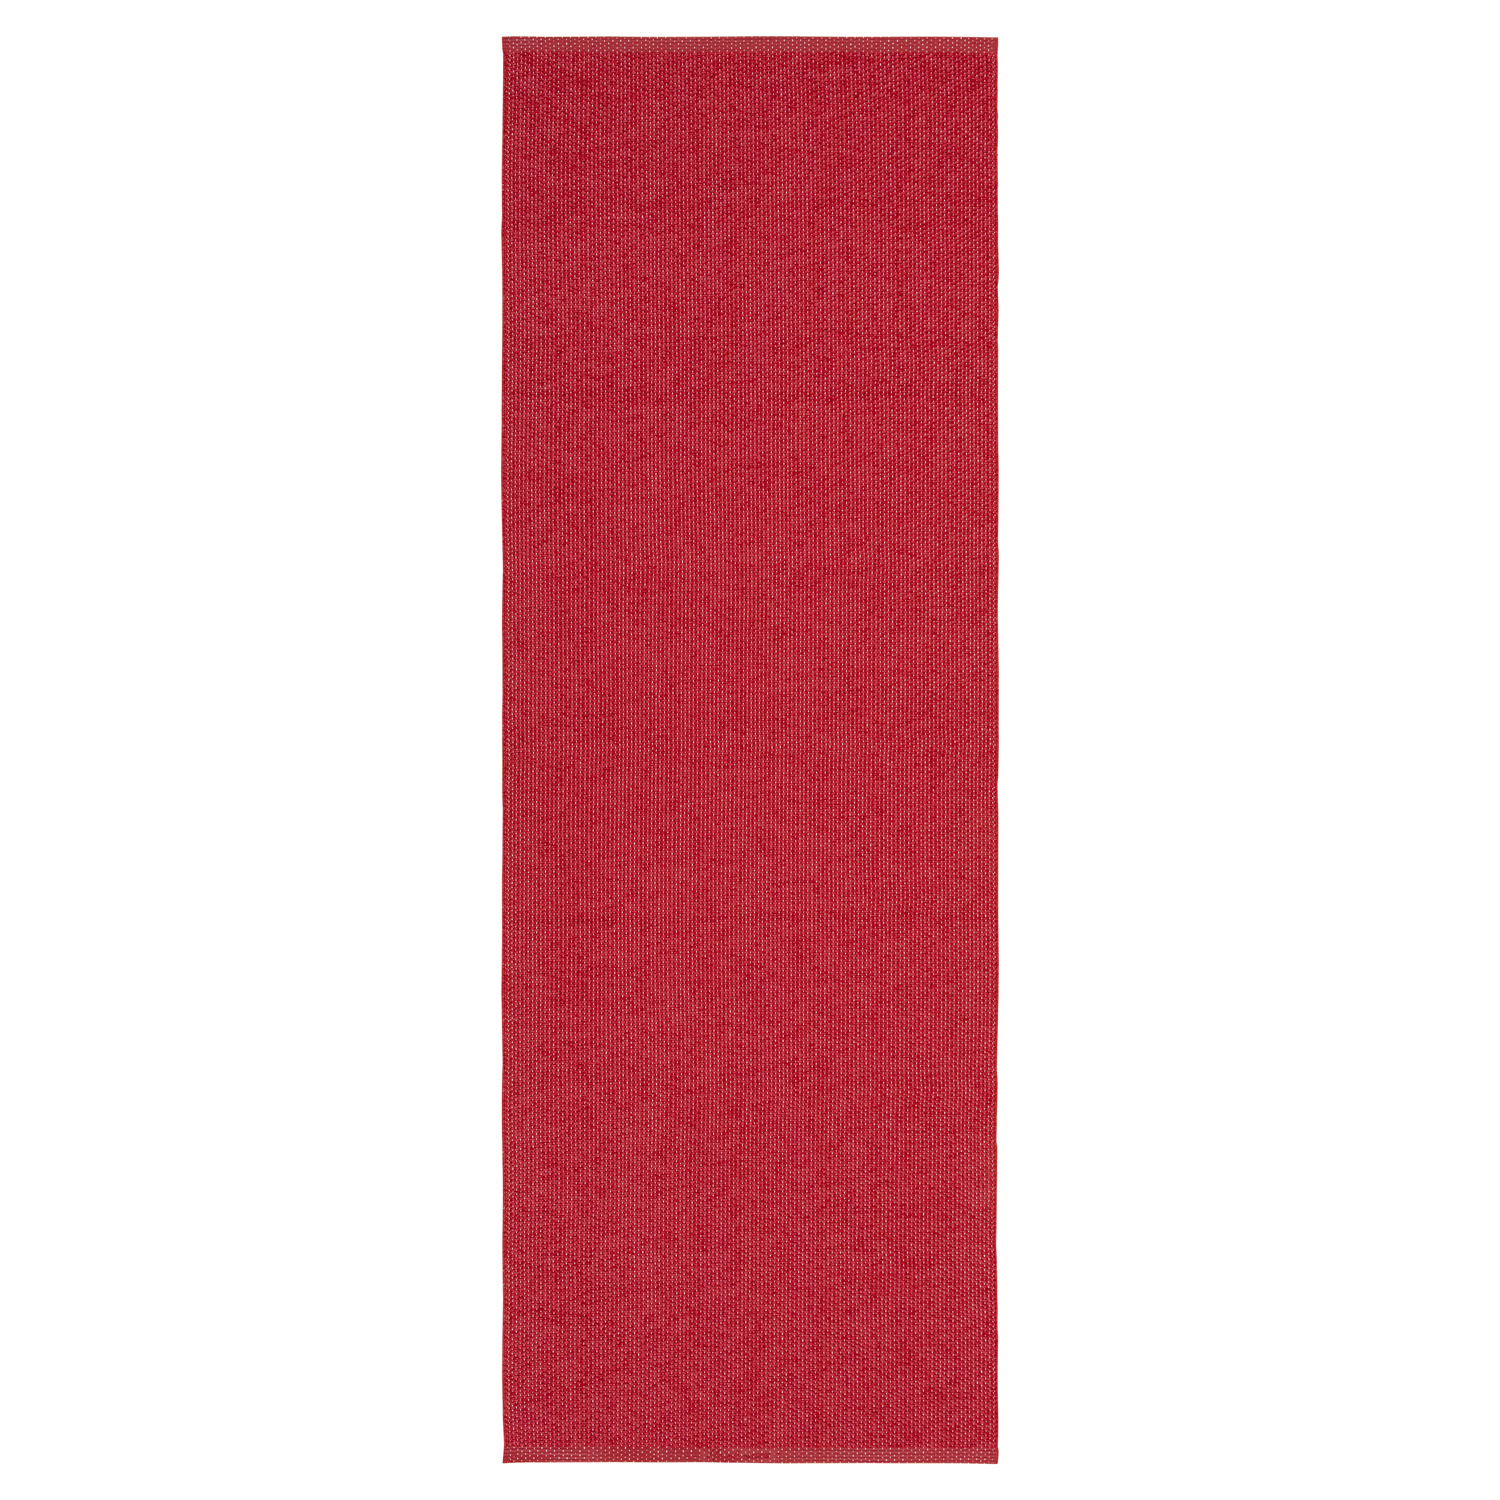 Horredsmattan Teppich Solo Red für Innen und Aussen Made in Sweden since 1956 Hohe UV-Beständigkeit Pflegeleicht